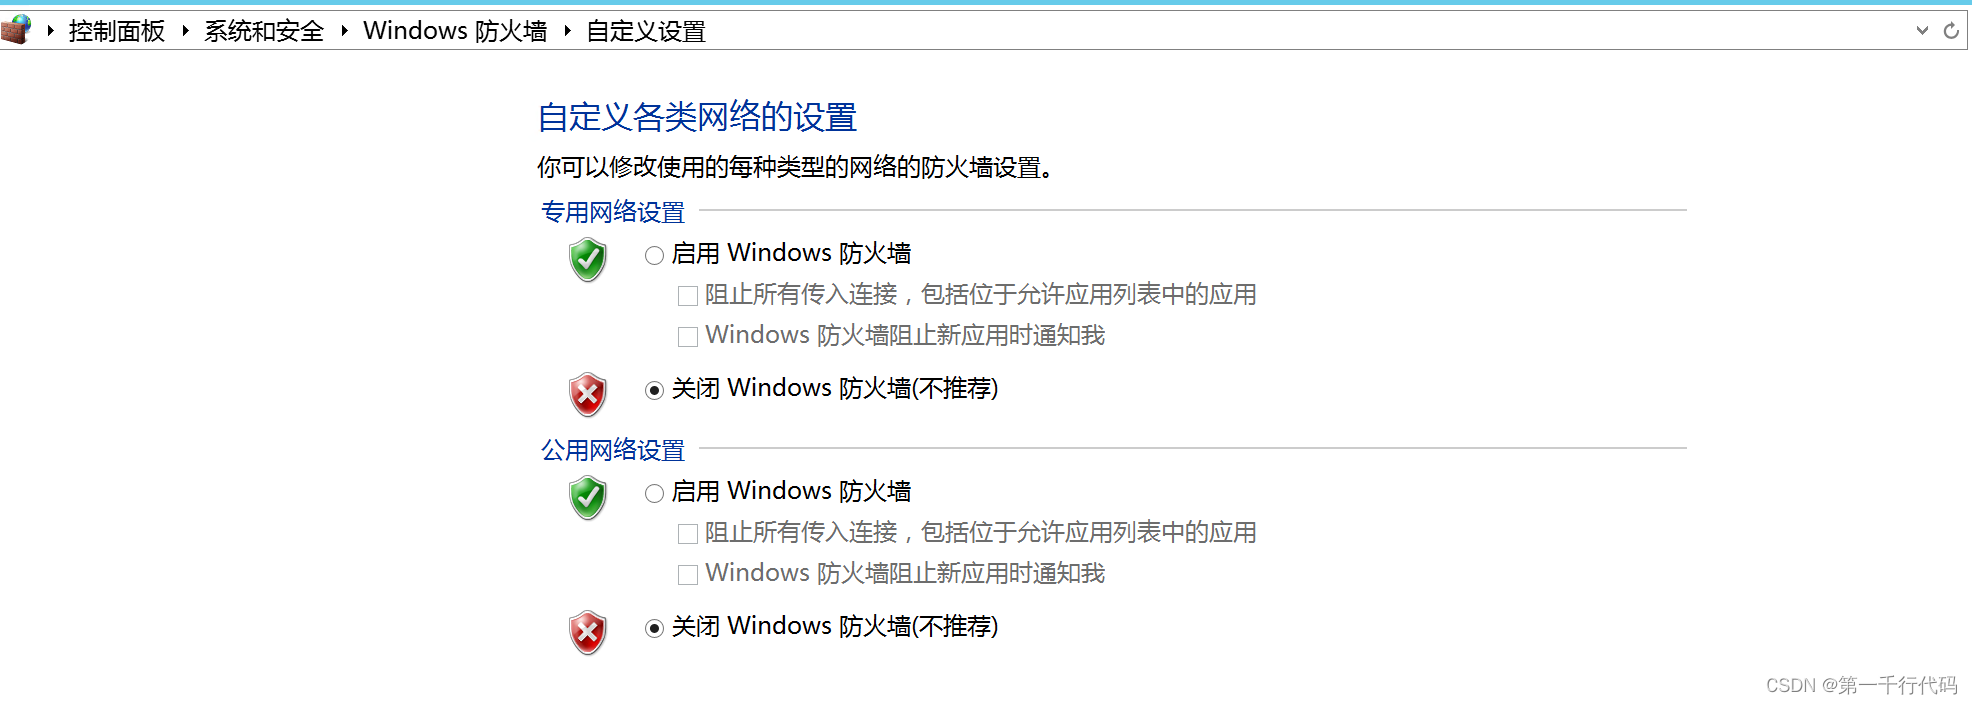 windows 2012服务器配置nginx后无法访问域名的问题